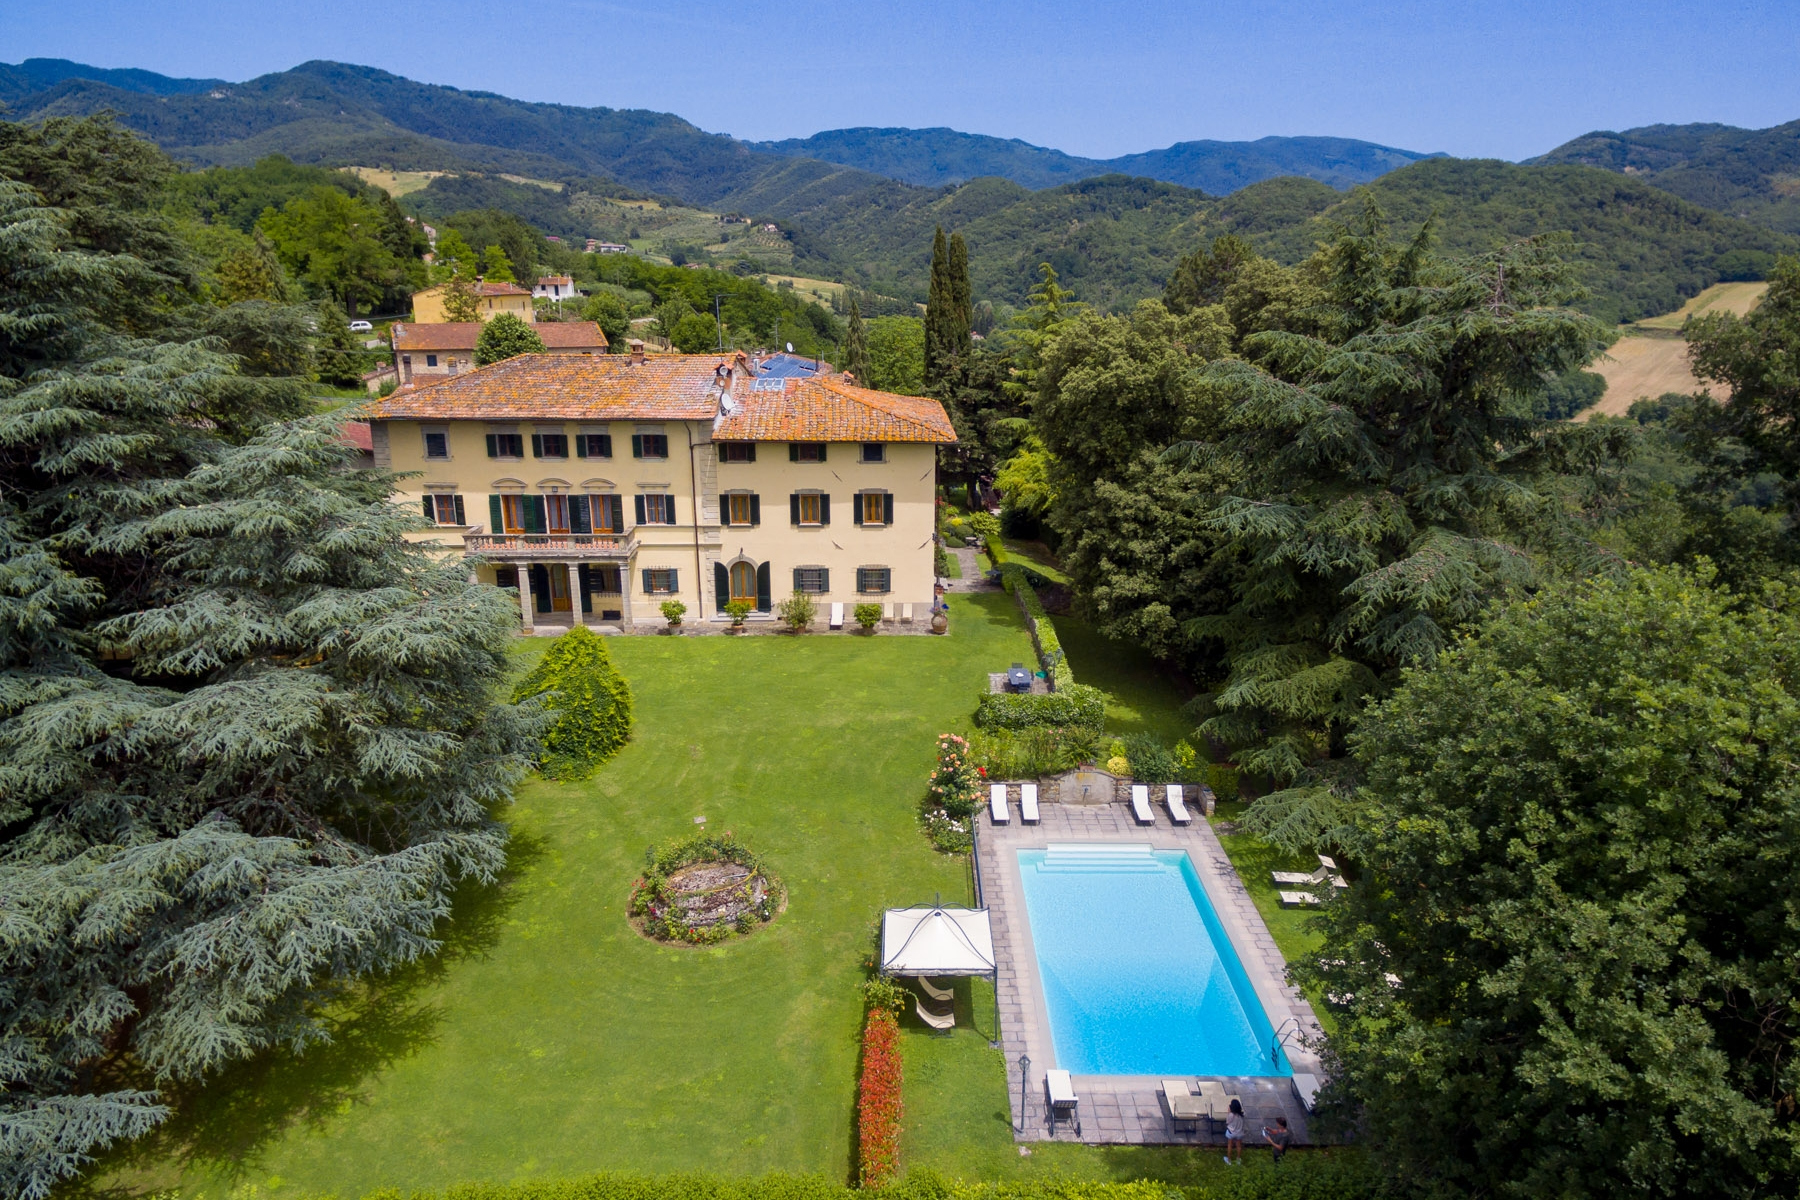 Villa in Vendita a Vicchio: 5 locali, 3000 mq - Foto 5